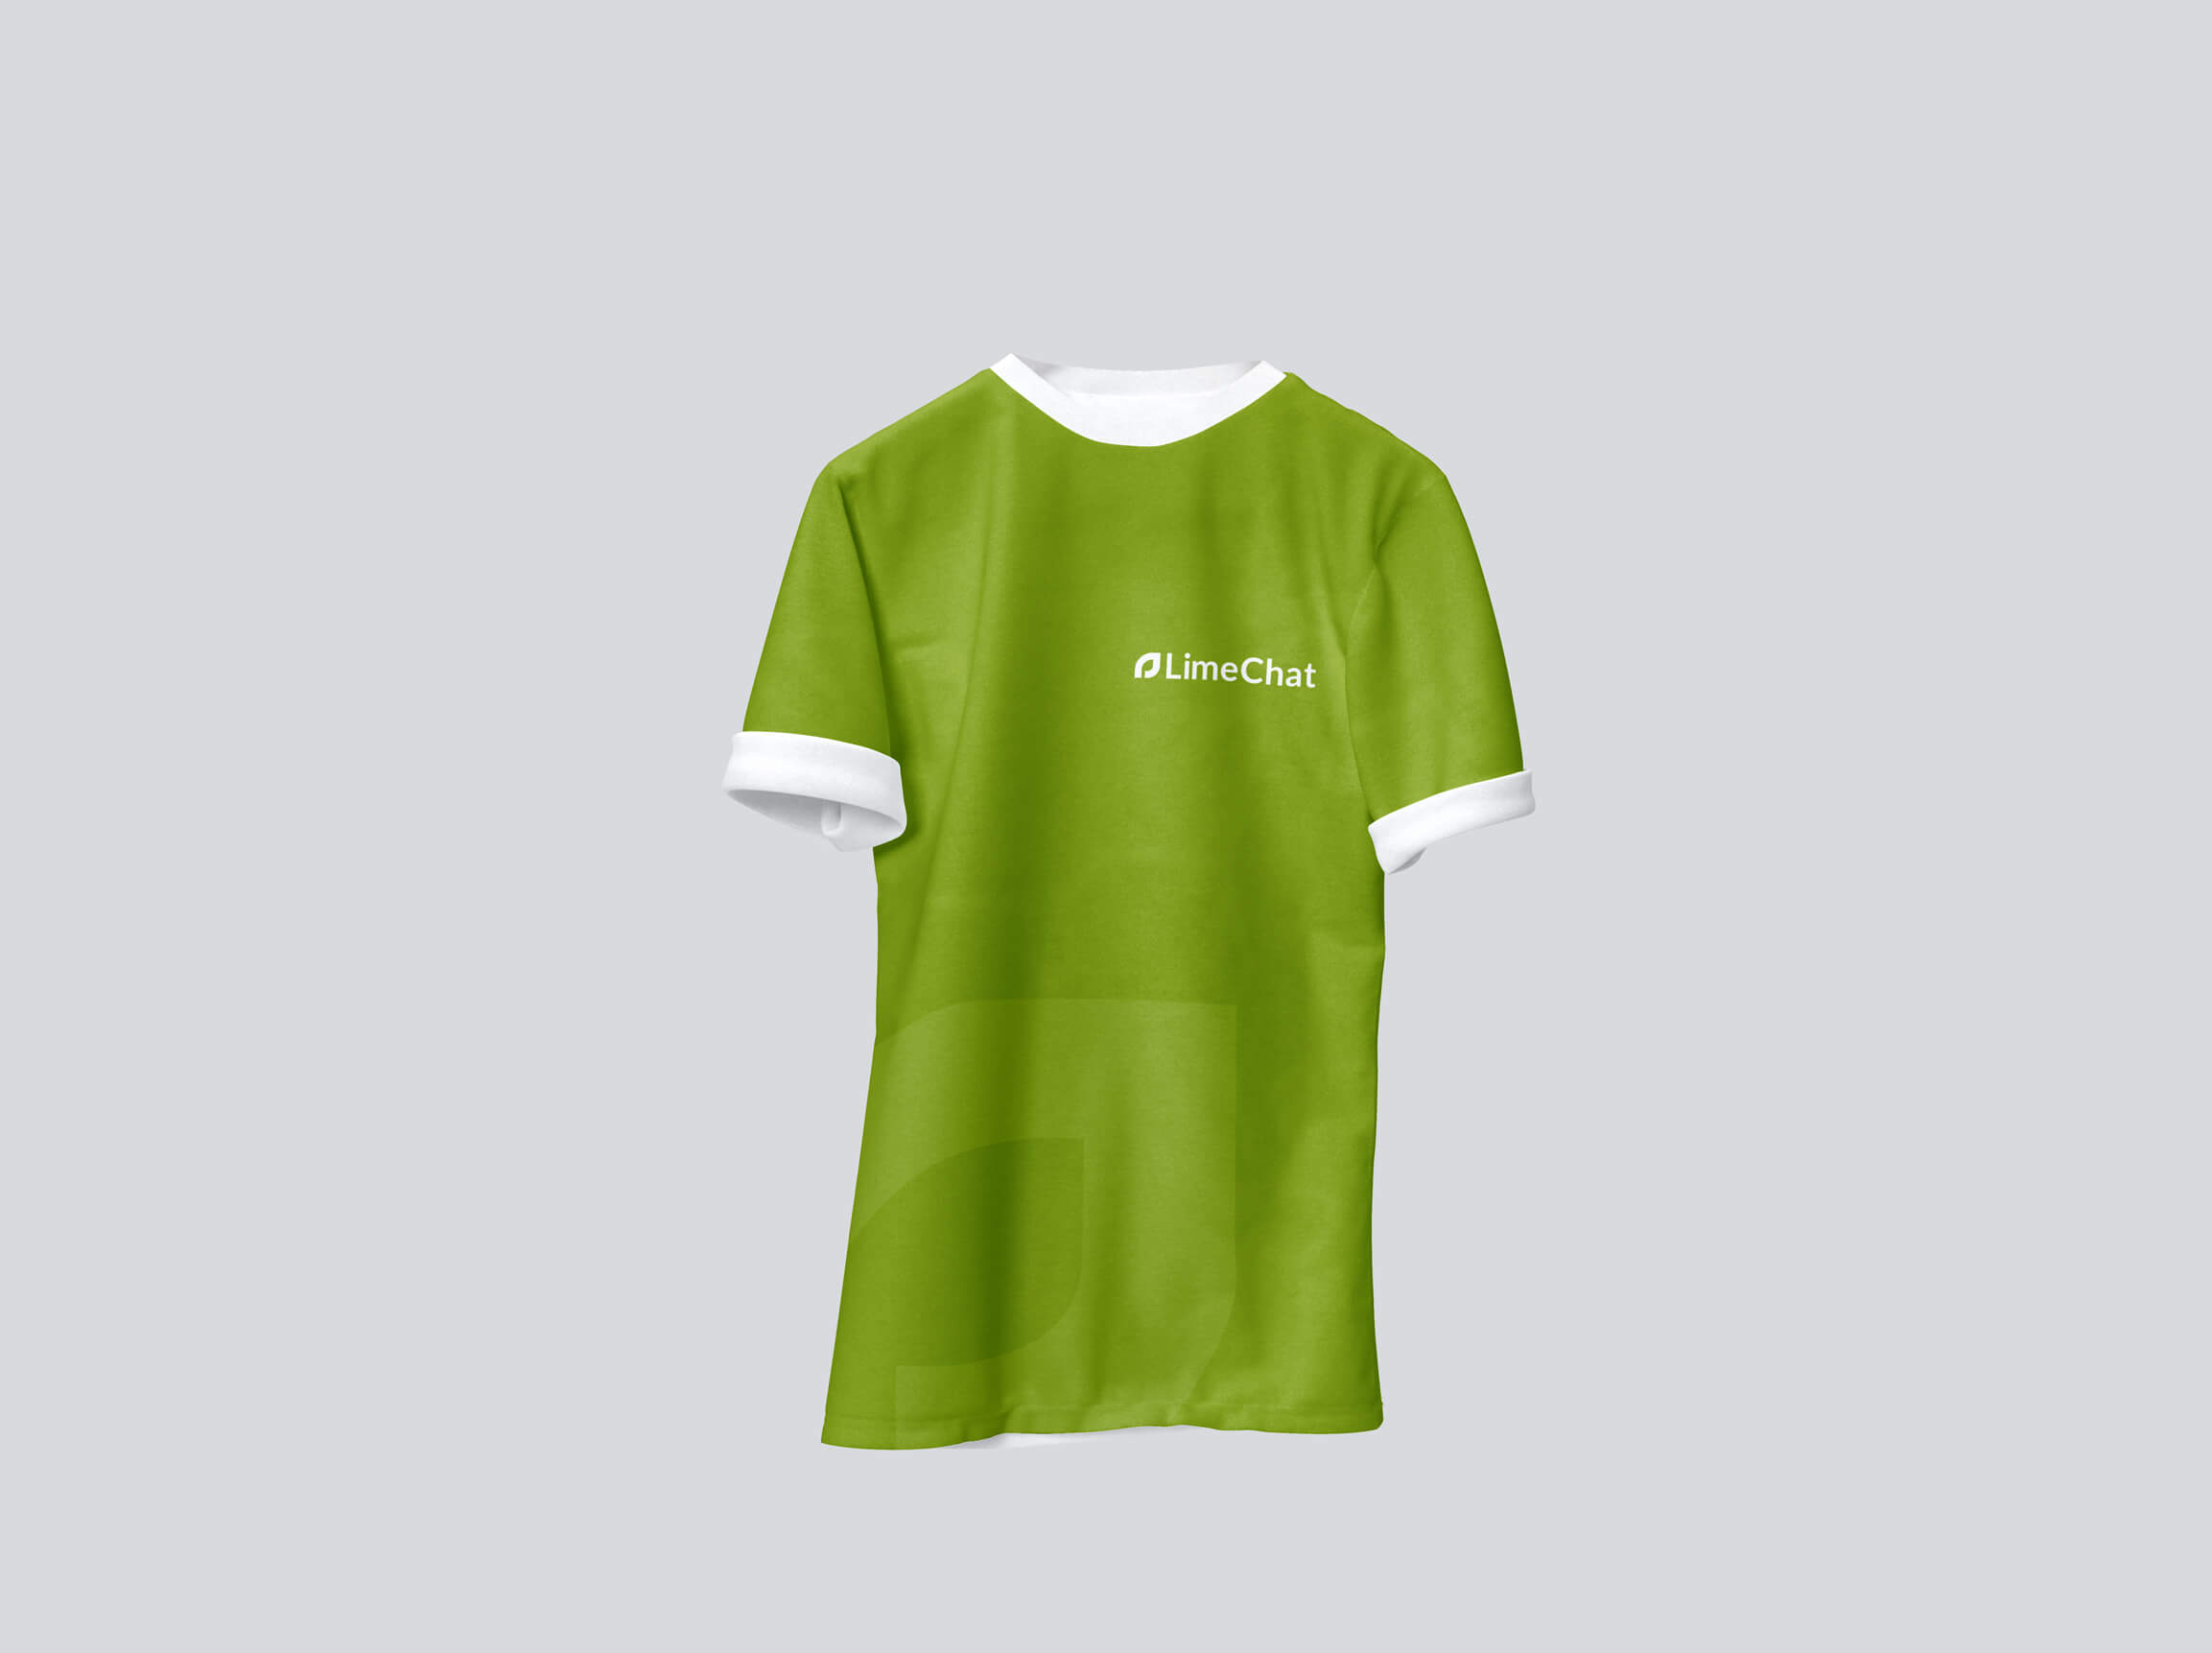 LC Tshirt Mockup – 04